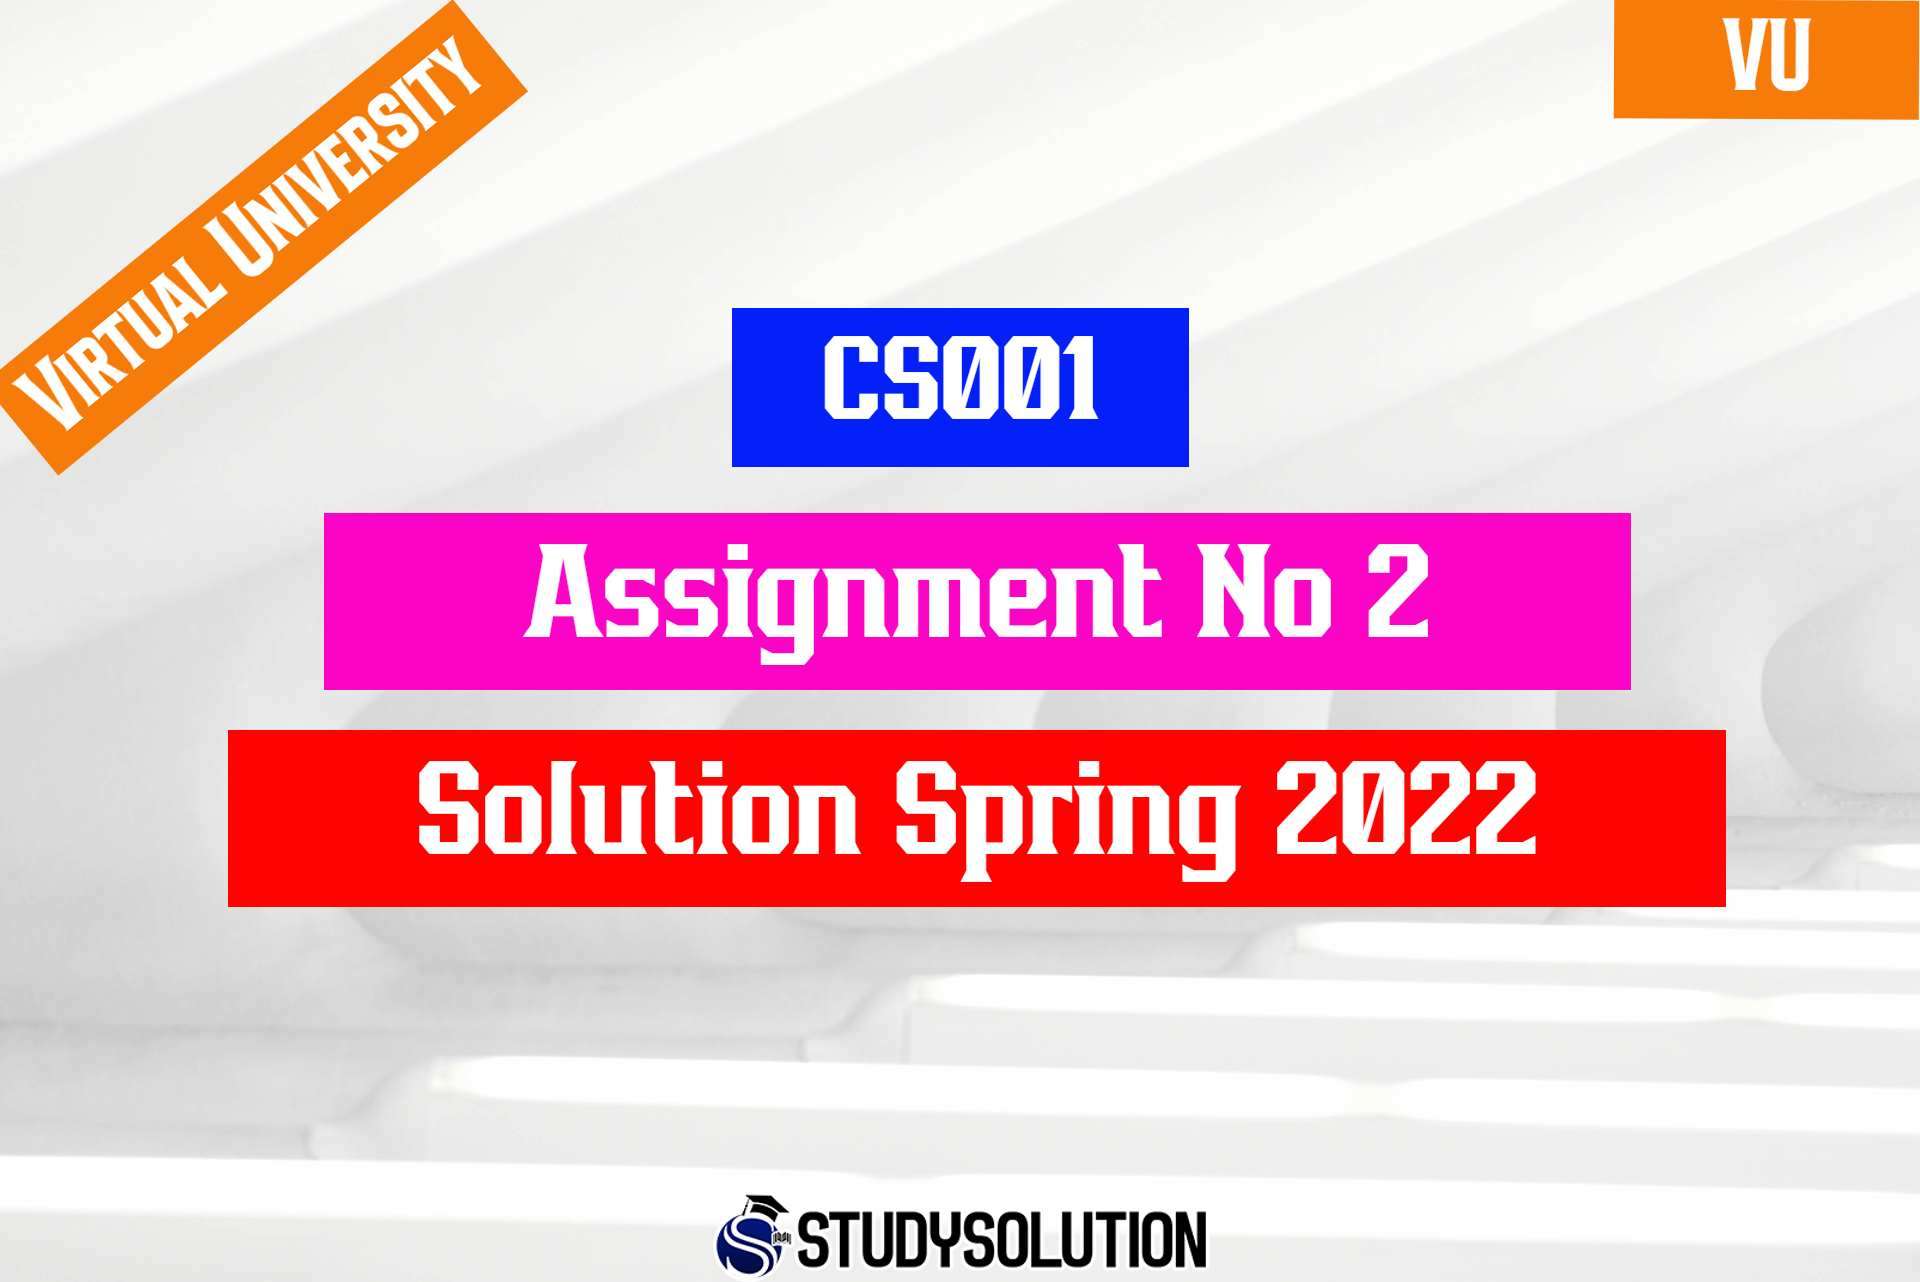 CS001 Assignment No 2 Solution Spring 2022